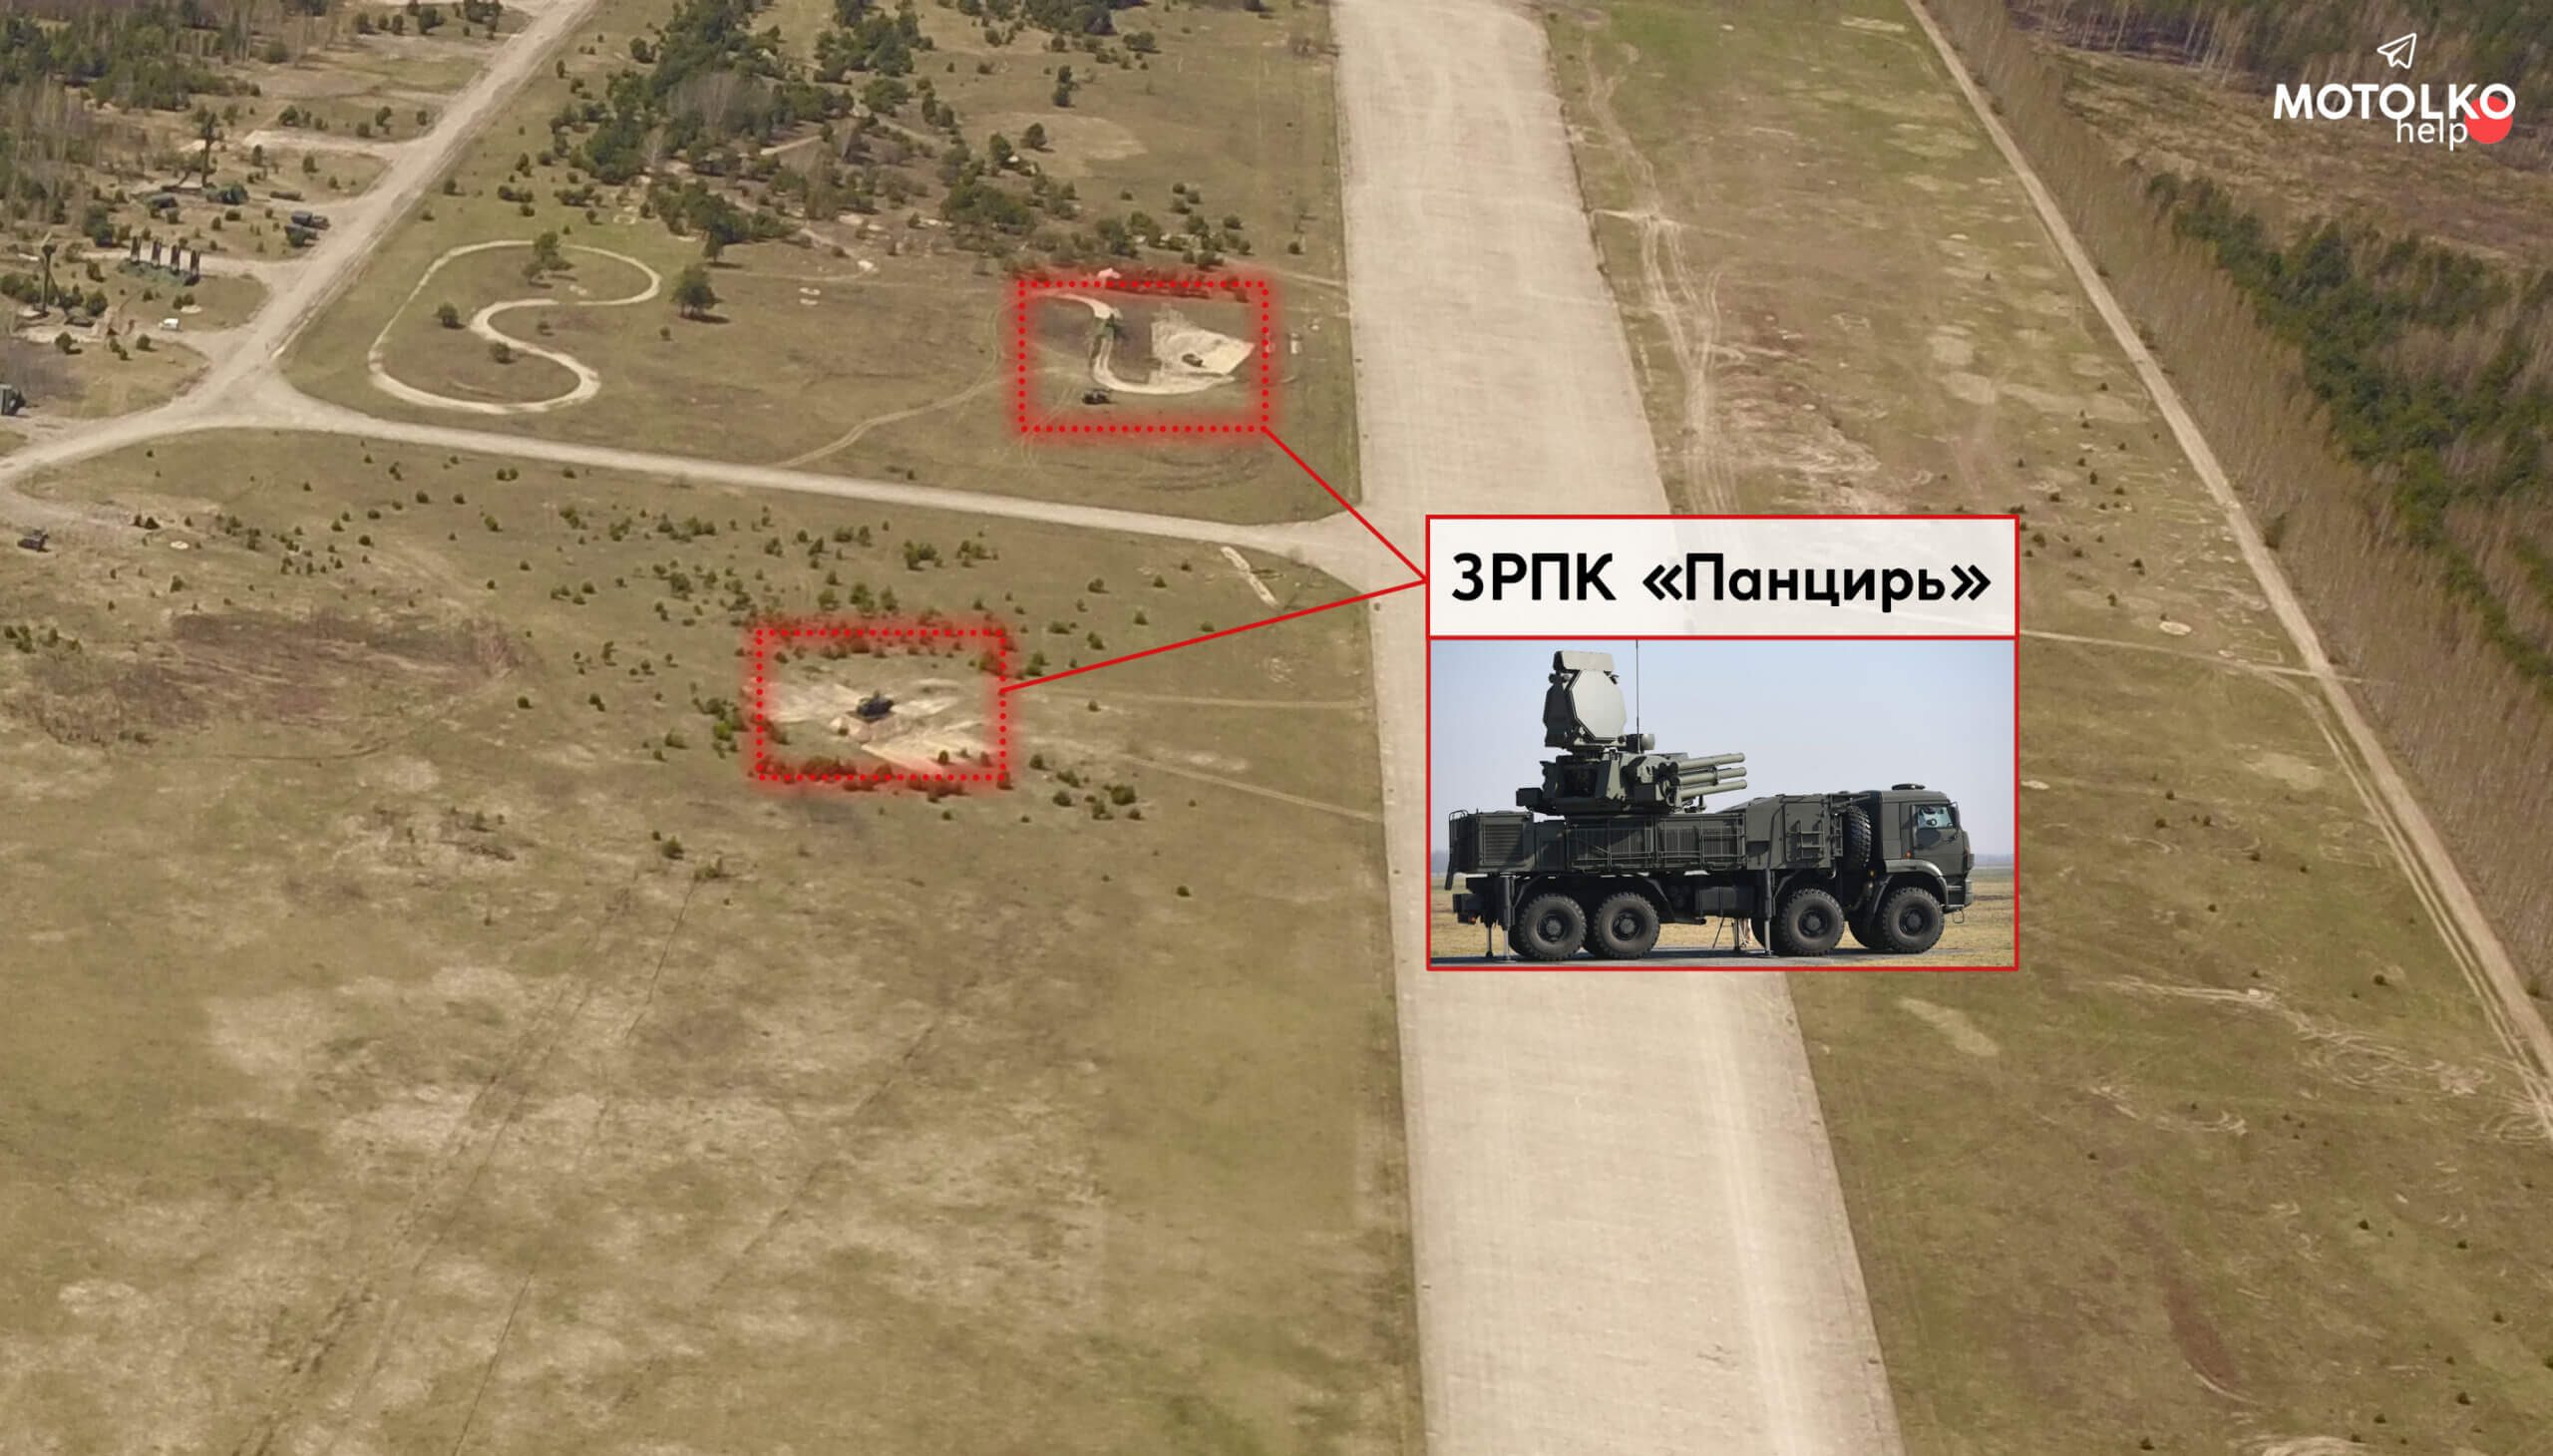 С-400, РЛС «48Я6 Подлёт» и ЗРПК «Панцирь». Войска РФ продолжают дислоцироваться на территории аэродрома в Зябровке